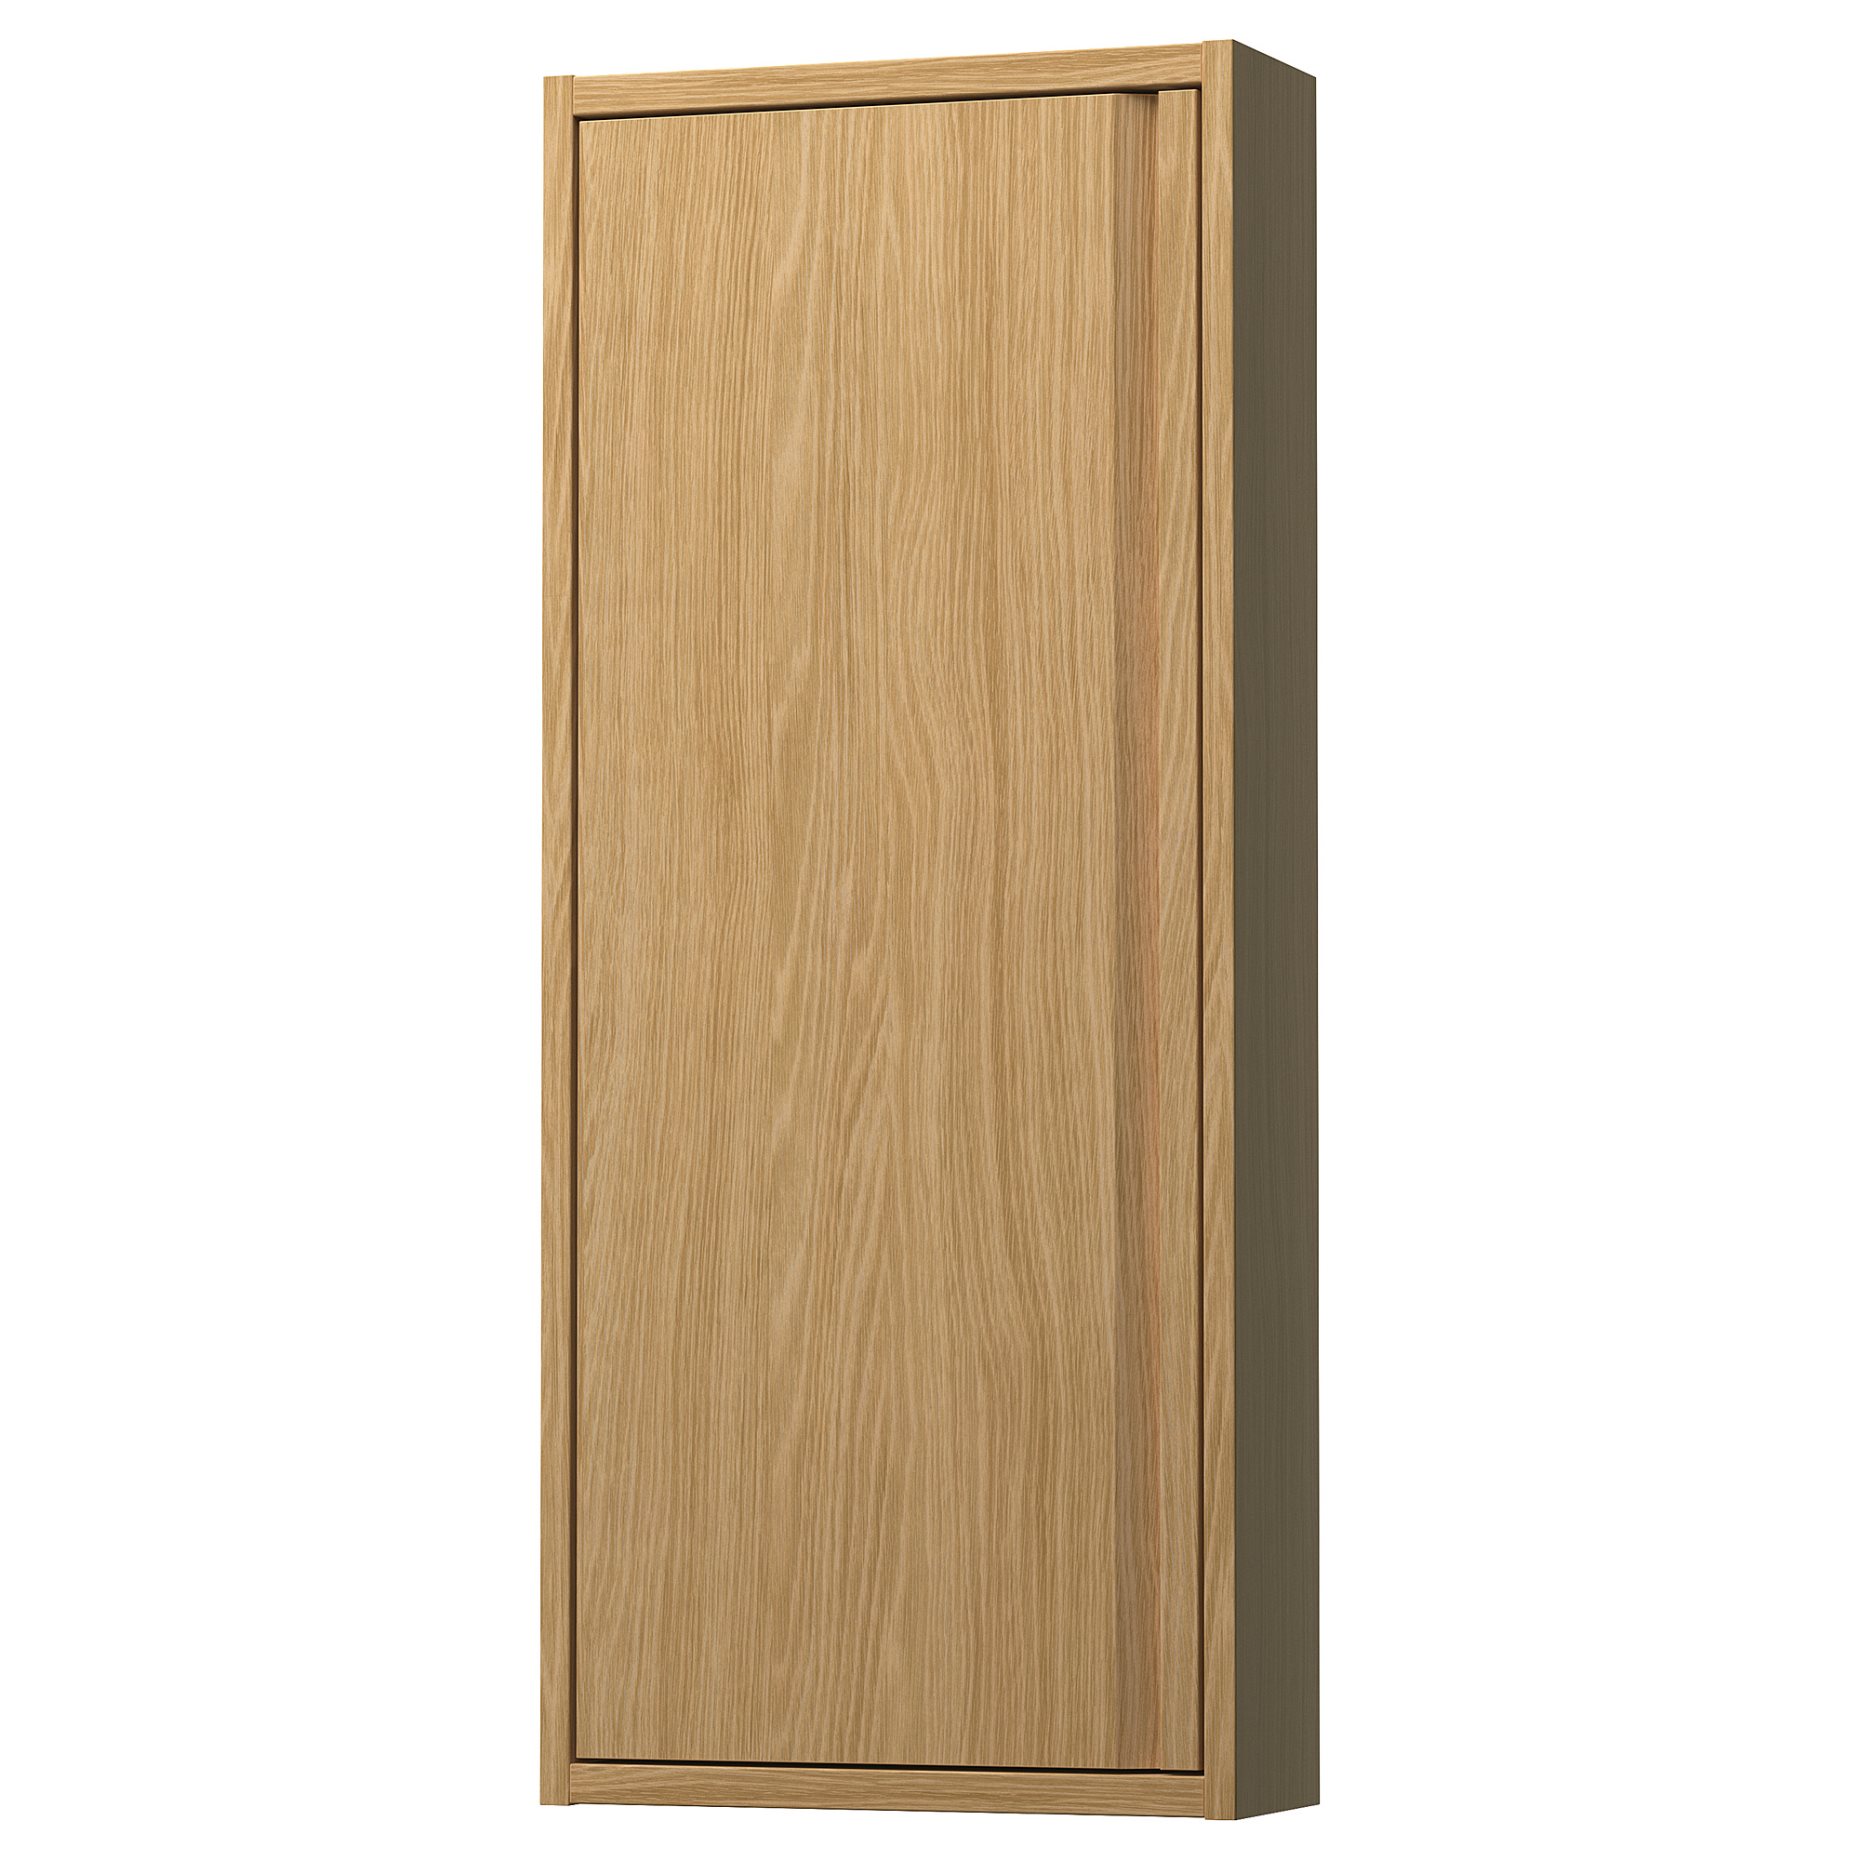 ANGSJON, ντουλάπι τοίχου με πόρτα, 40x15x95 cm, 205.350.77